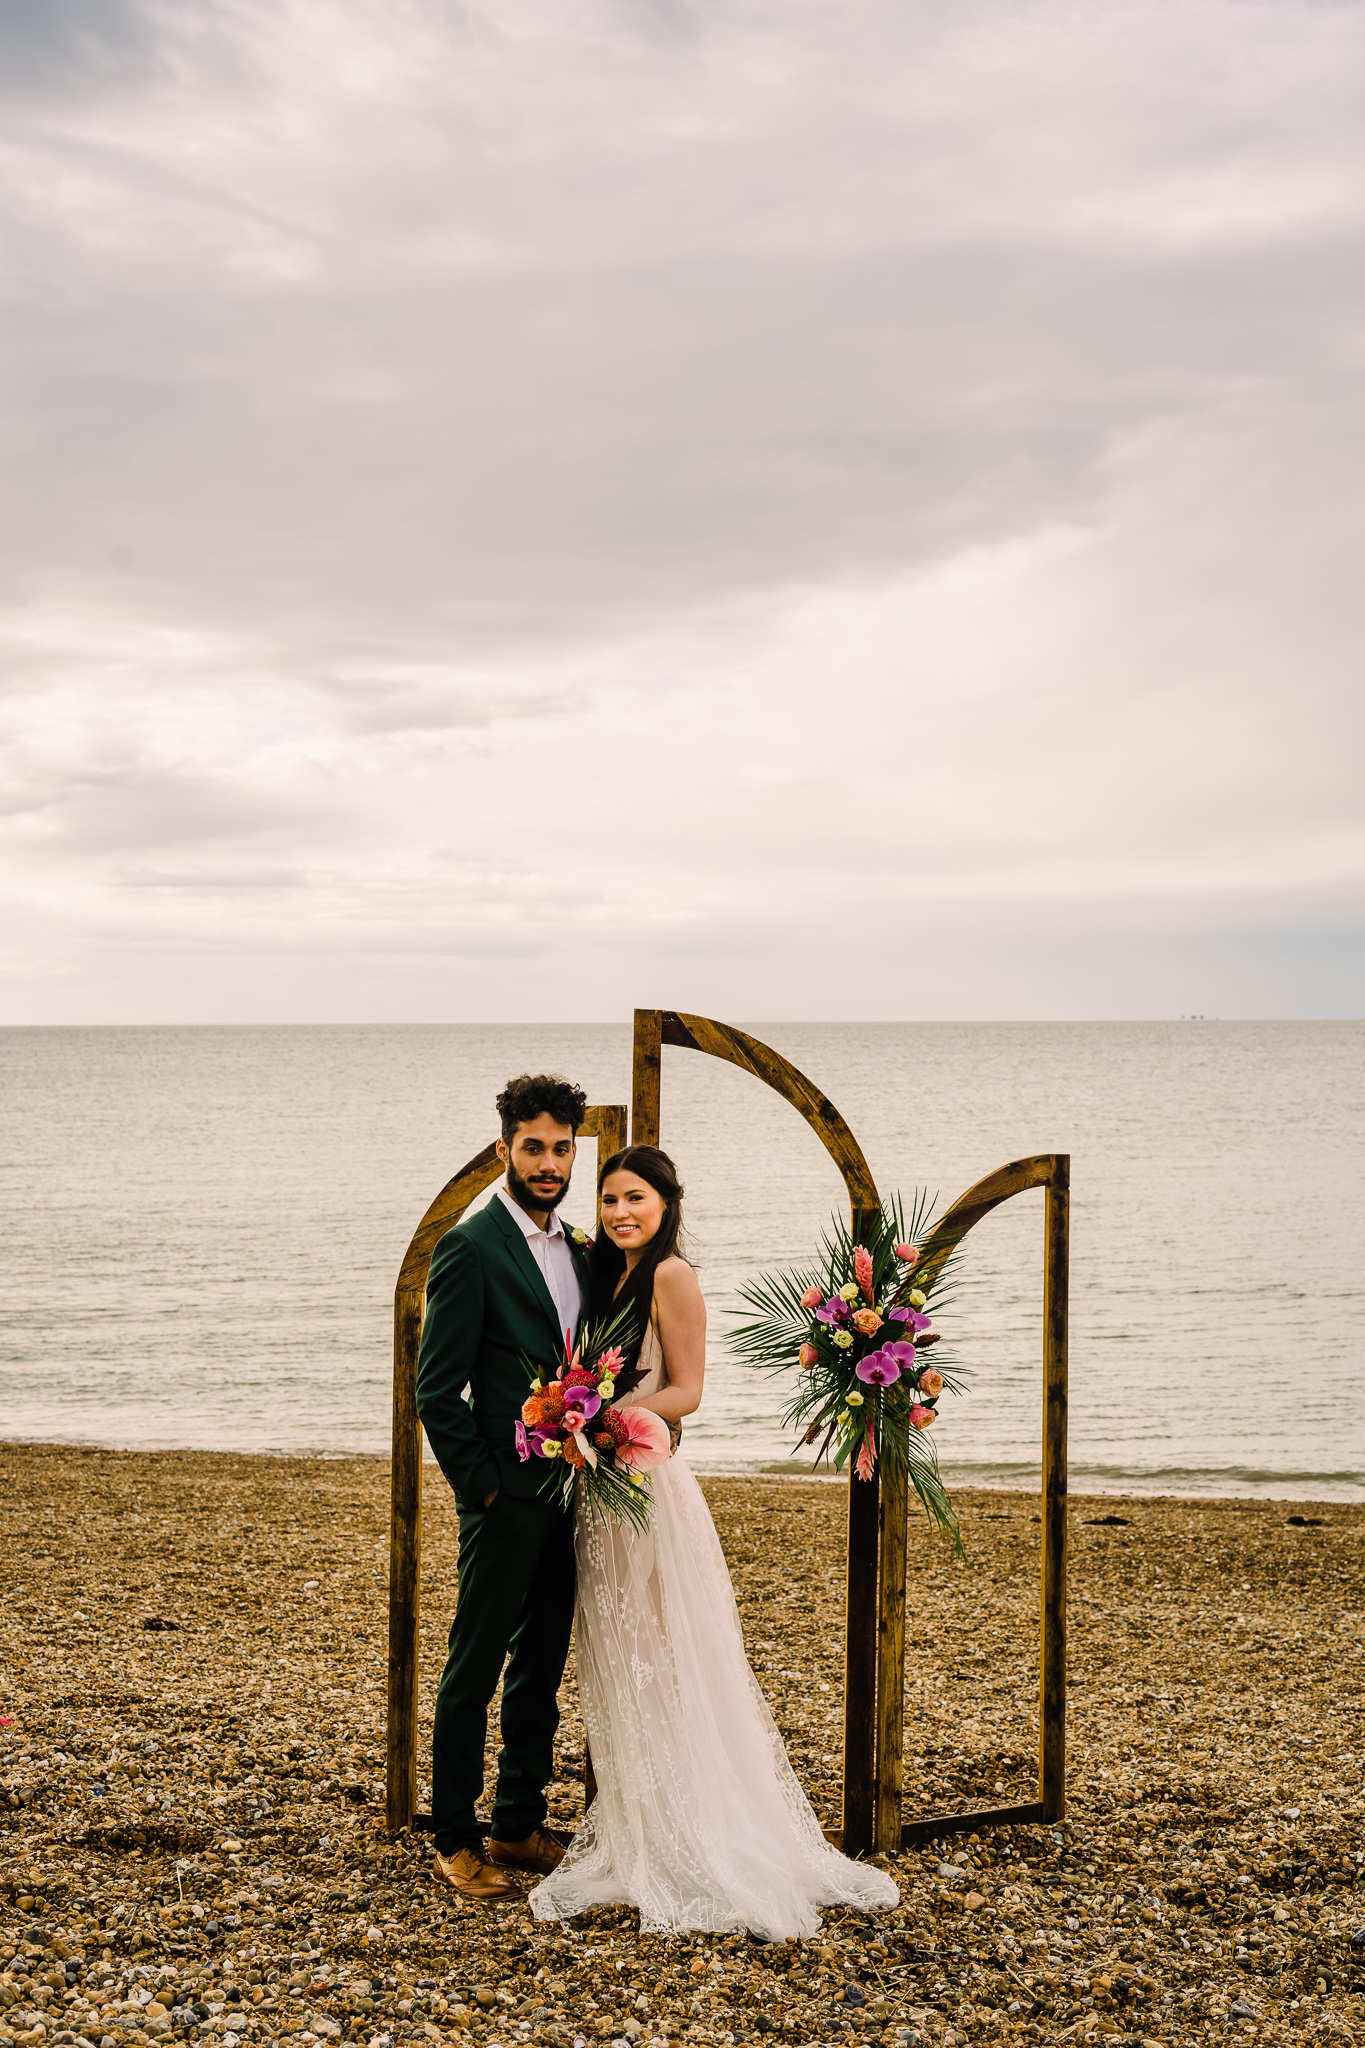 The Beacon house Whitstable, Kent Beach Wedding, Tropical Beach Wedding, Kent Wedding Photographer, Beacon House Wedding, Whitstable Wedding, british seaside wedding